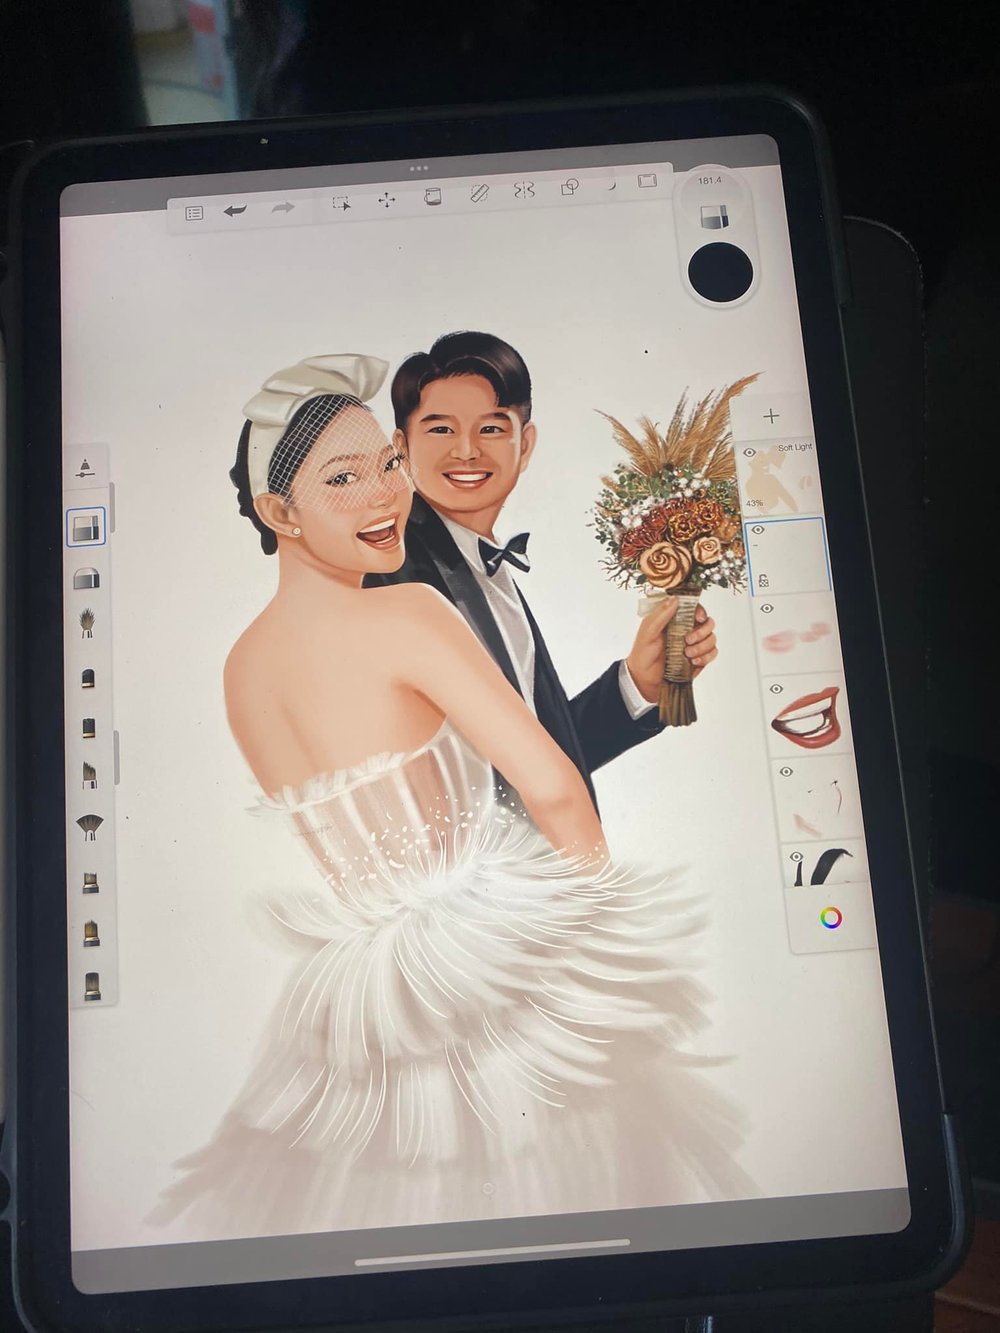  
Cận cảnh quá trình vẽ ra thiệp cưới của Minh Hằng được NTK đăng tải. (Ảnh: FB Sỹ Trần)